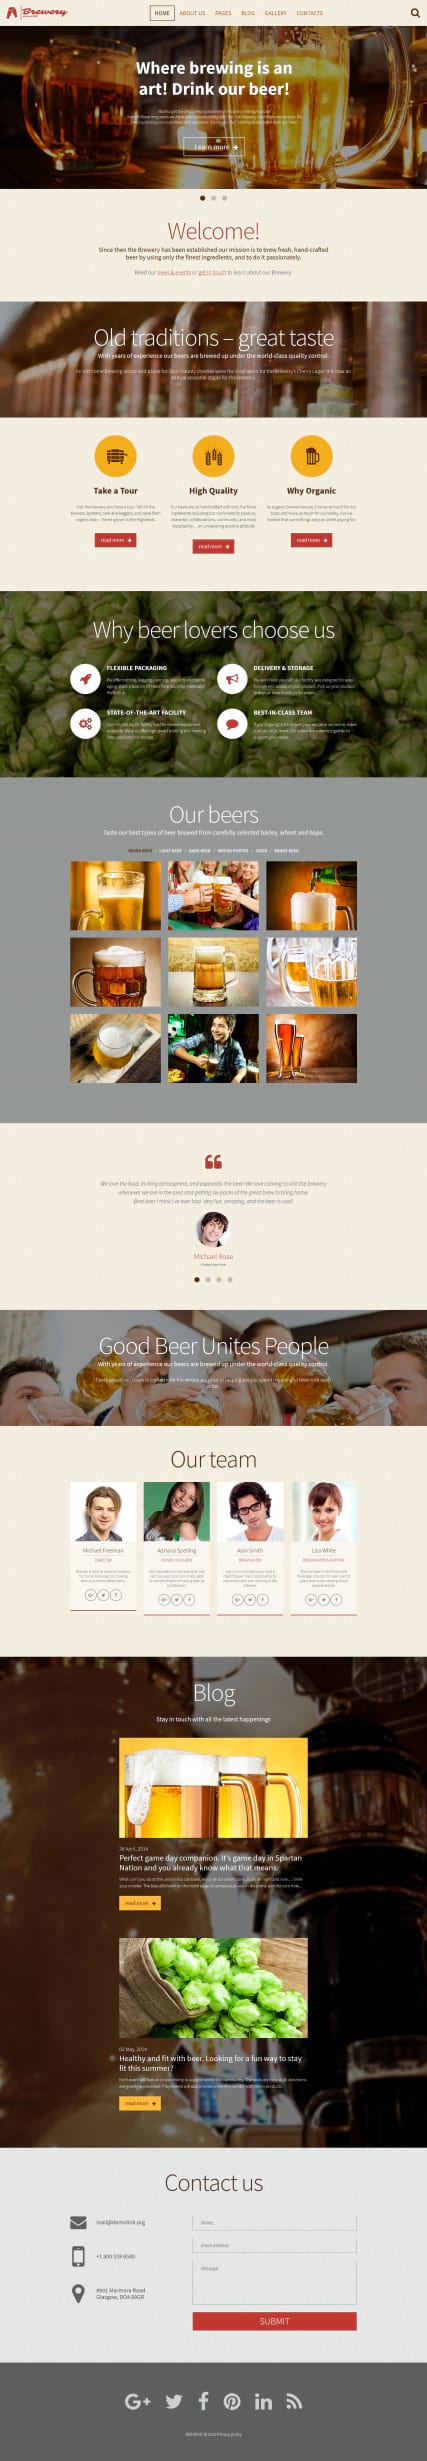 Готовый шаблон сайта пива с адаптивным дизайном